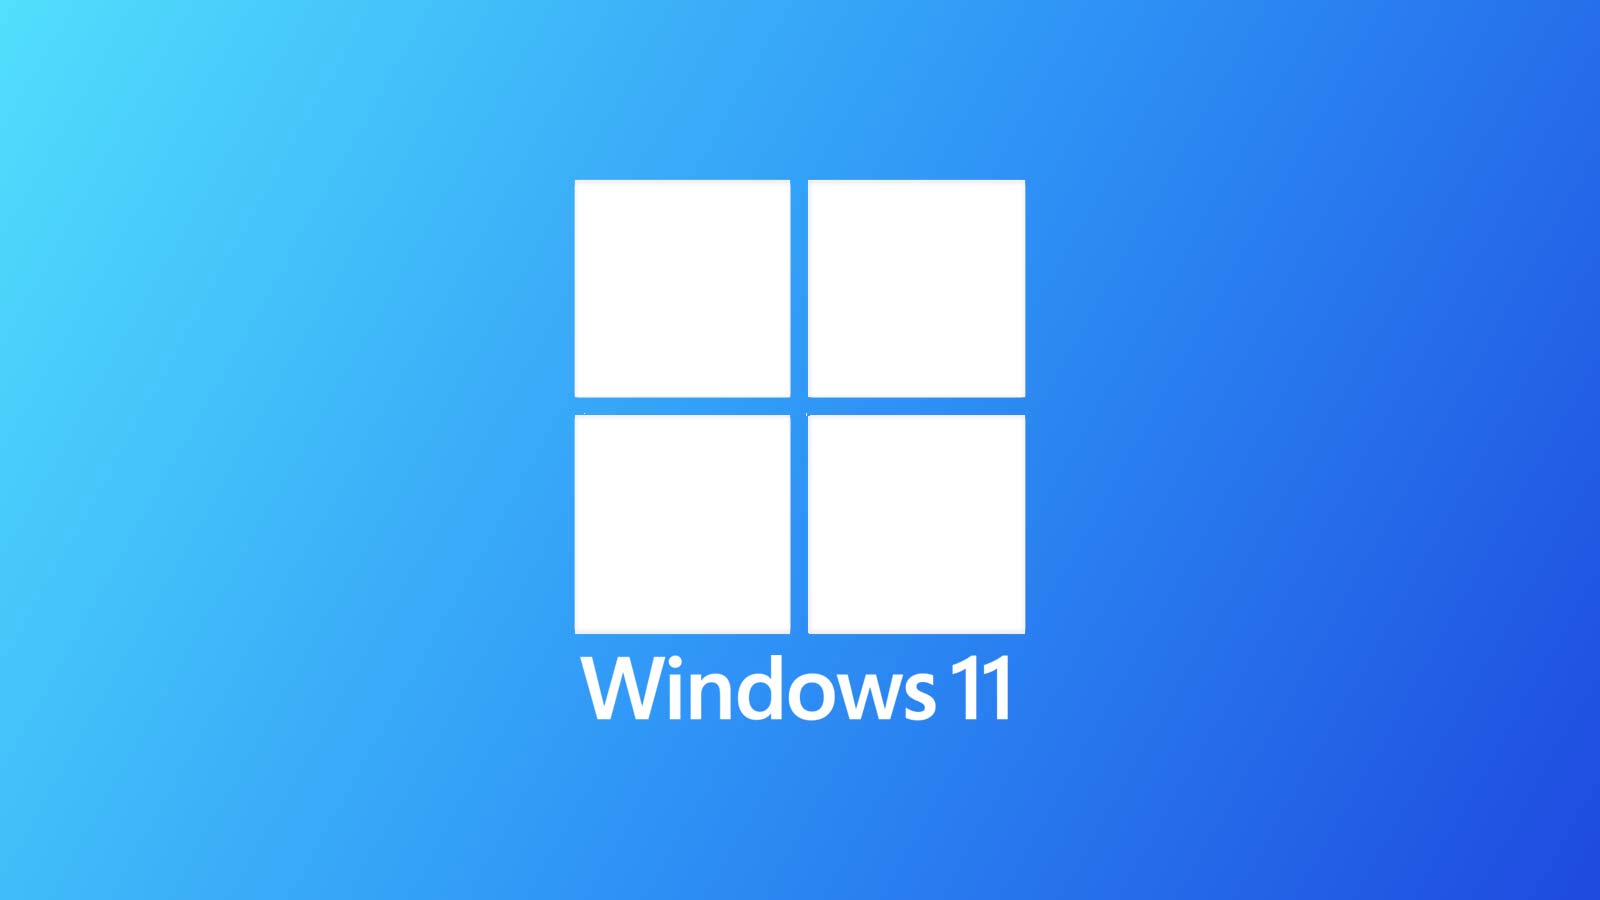 Zła decyzja Microsoft TAMPIT ogłosiła Windows 11